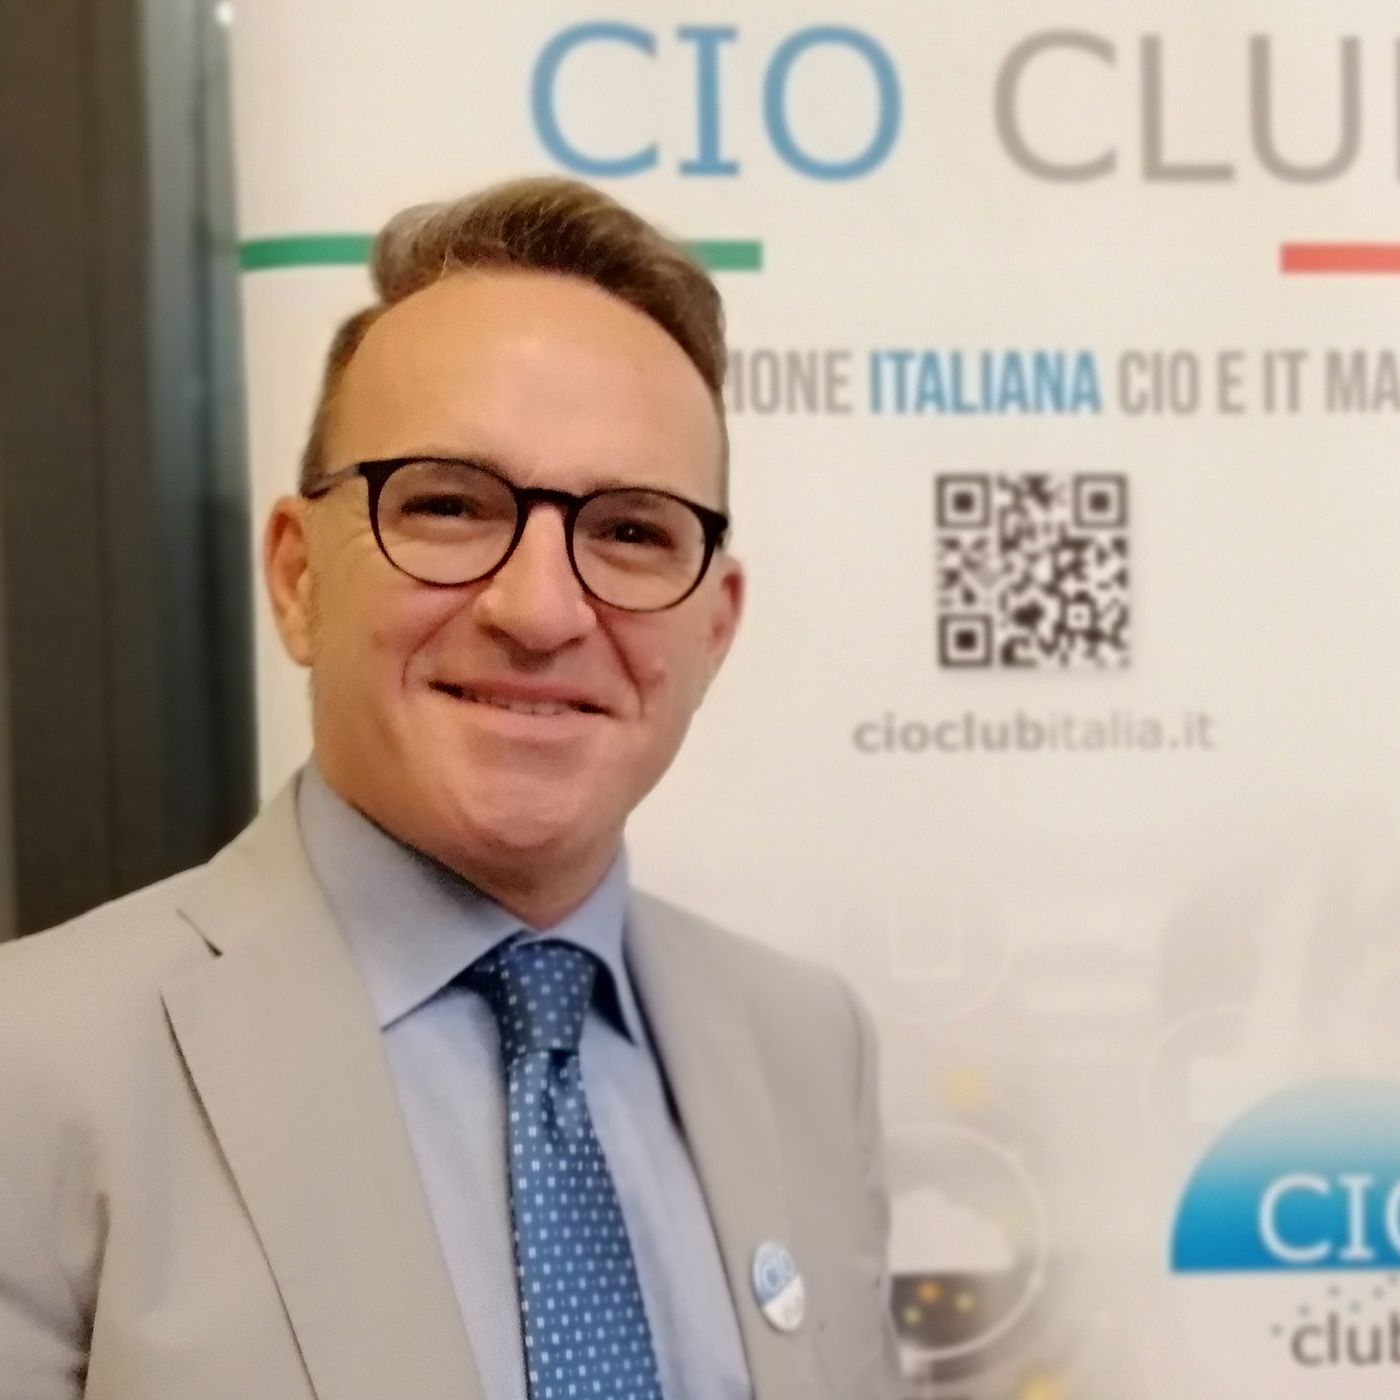 THE CIO POINT OF VIEW - Eduardo De Crescenzo (Asia Napoli): "La formazione in azienda non basta"